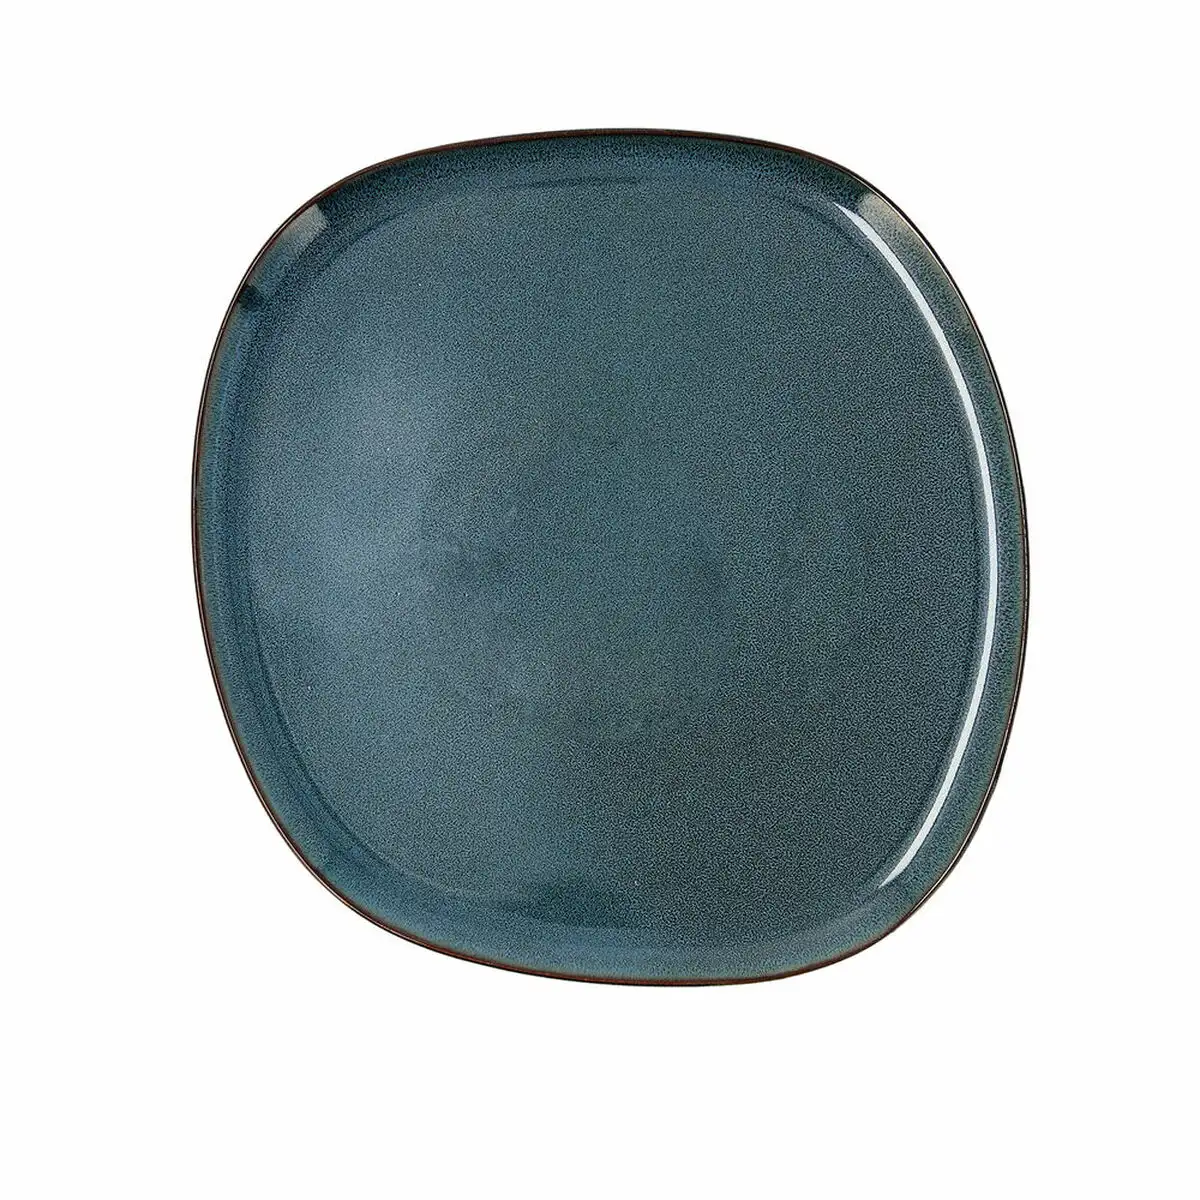 Assiette plate bidasoa ikonic ceramique bleu 26 5 x 25 7 x 1 5 cm pack 4x _5040. DIAYTAR SENEGAL - Votre Destination pour un Shopping Unique. Parcourez notre catalogue et trouvez des articles qui expriment votre singularité et votre style.